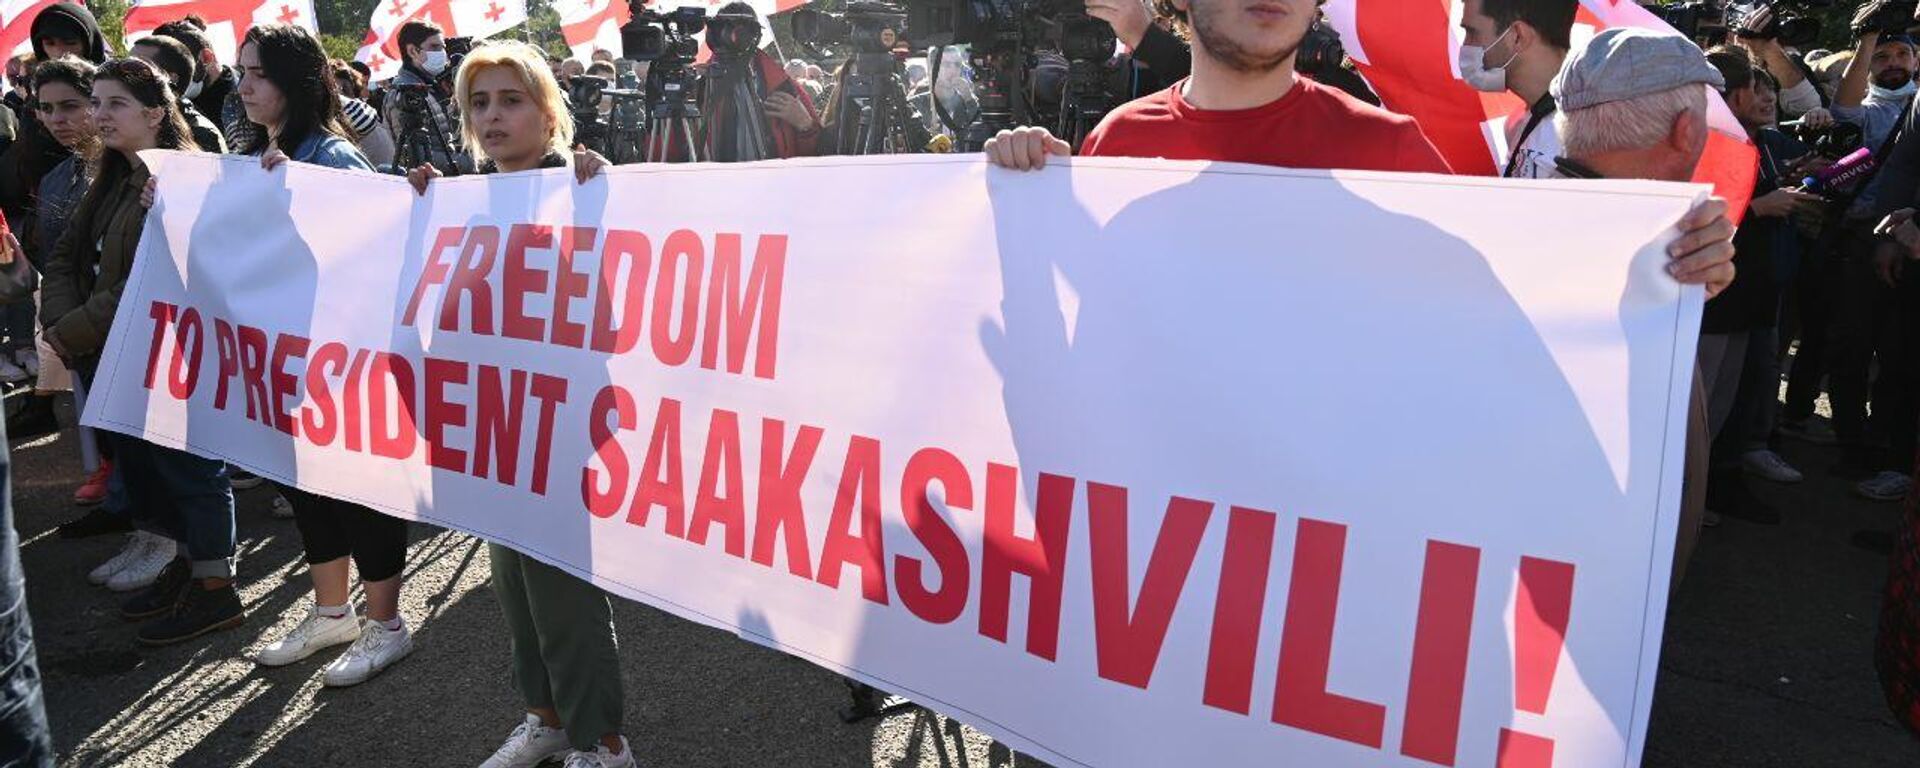 Акция протеста сторонников Саакашвили у Руставской тюрьмы 4 октября 2021 года - Sputnik Грузия, 1920, 12.10.2021